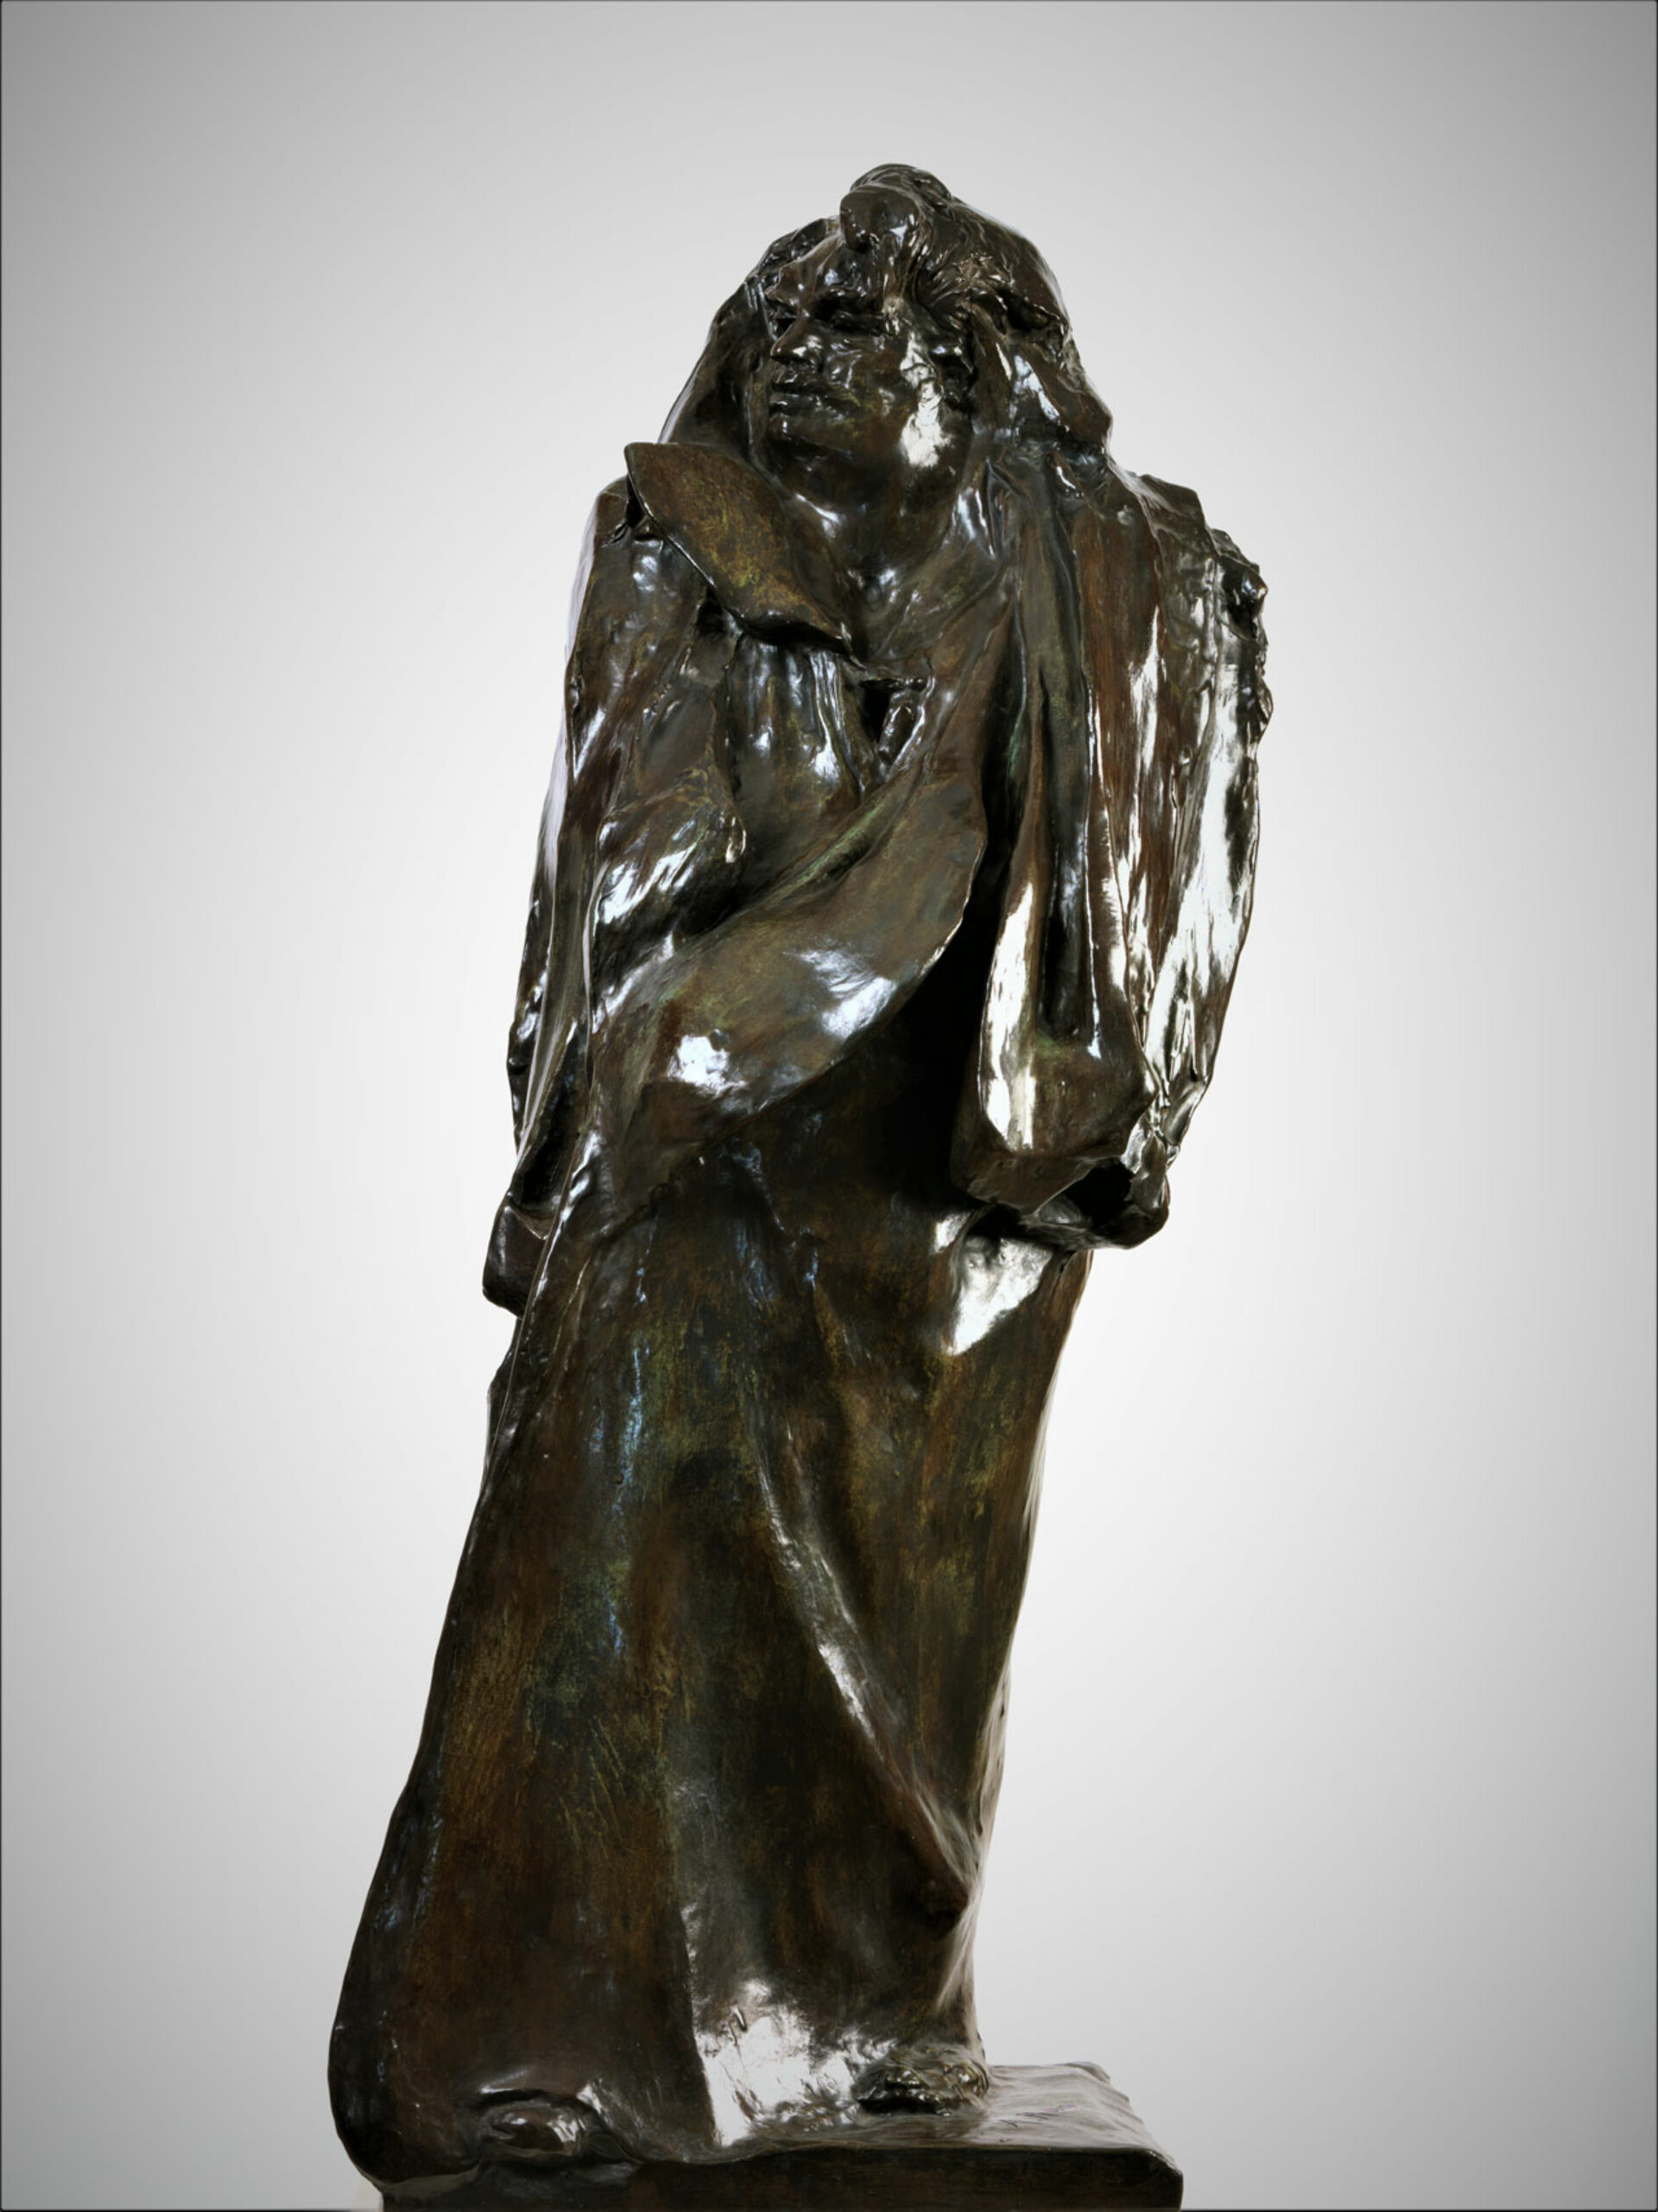 Auguste Rodin, Balzac, vorletzte Studie, 1897, Privatsammlung London, Fotografie Steve Russell